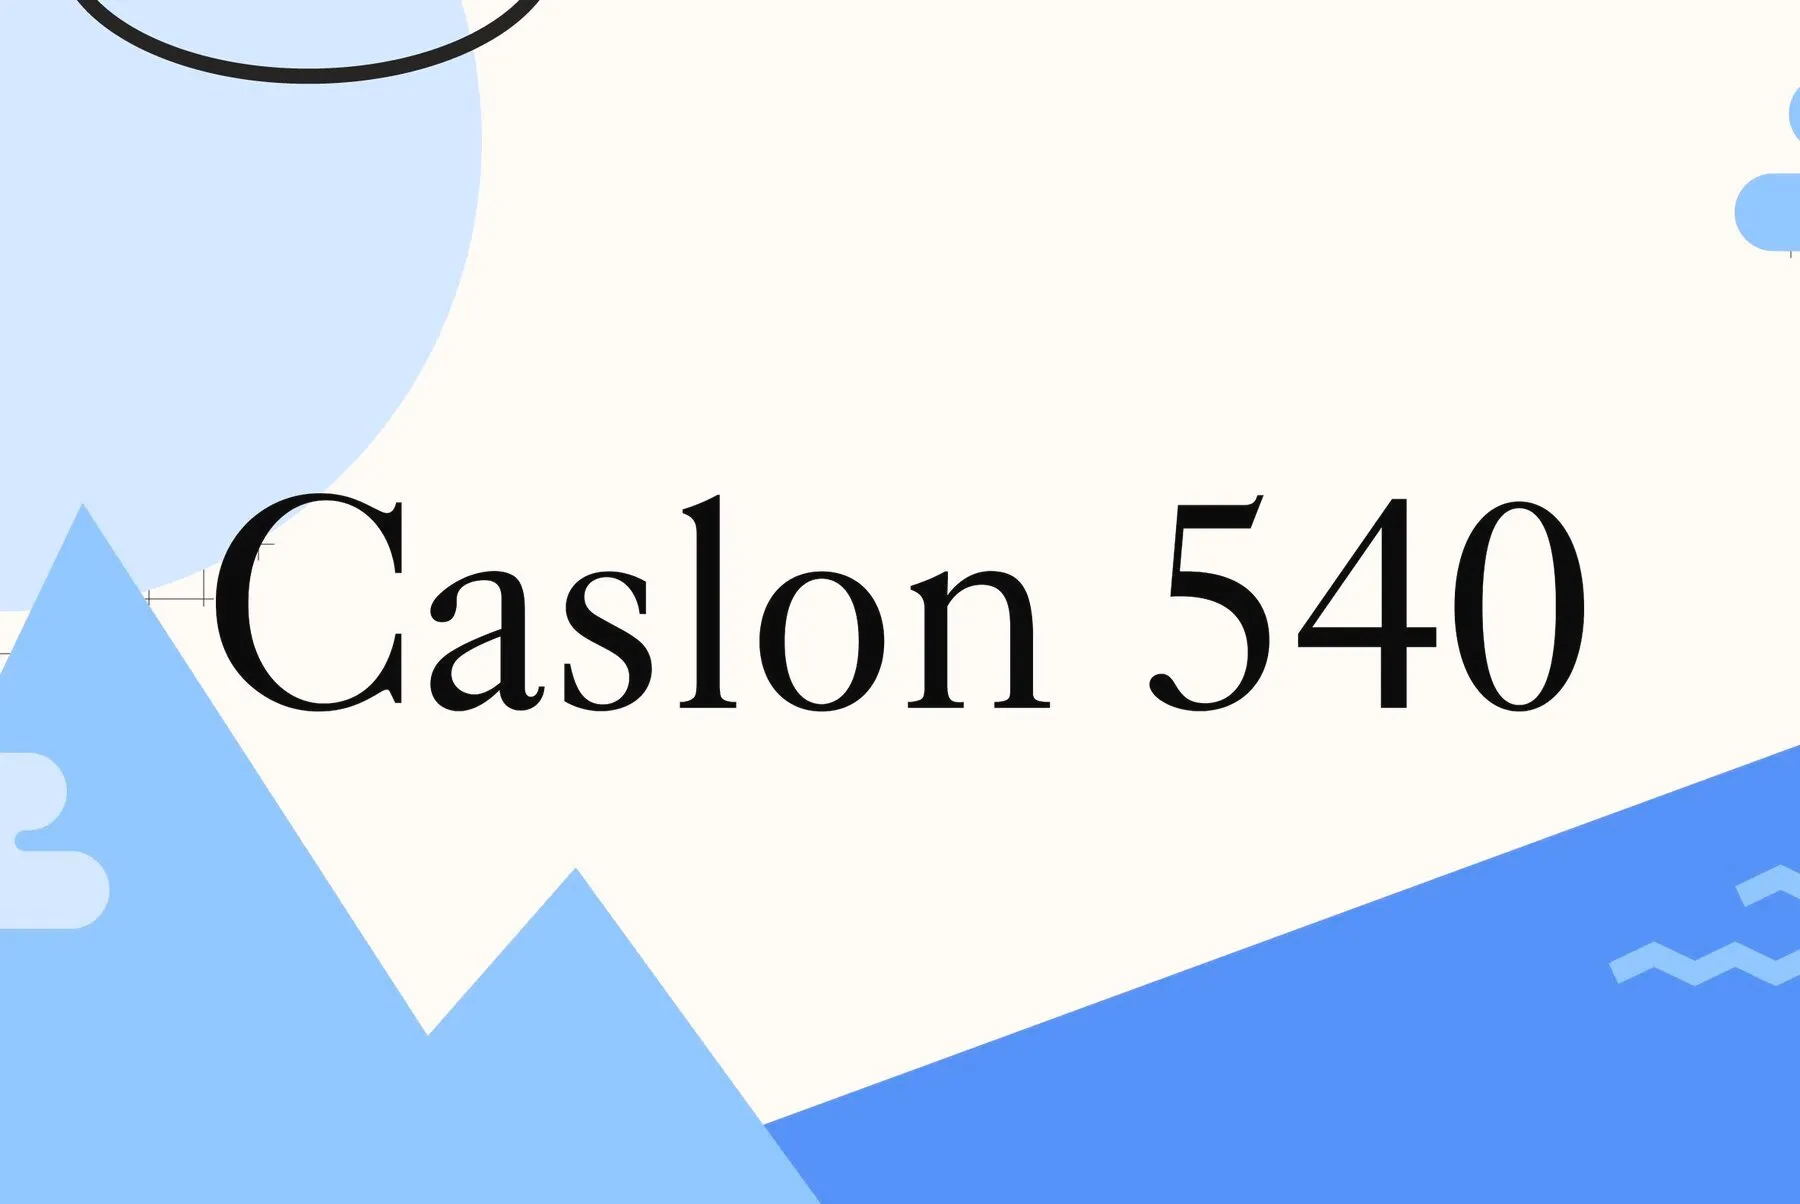 Caslon 540